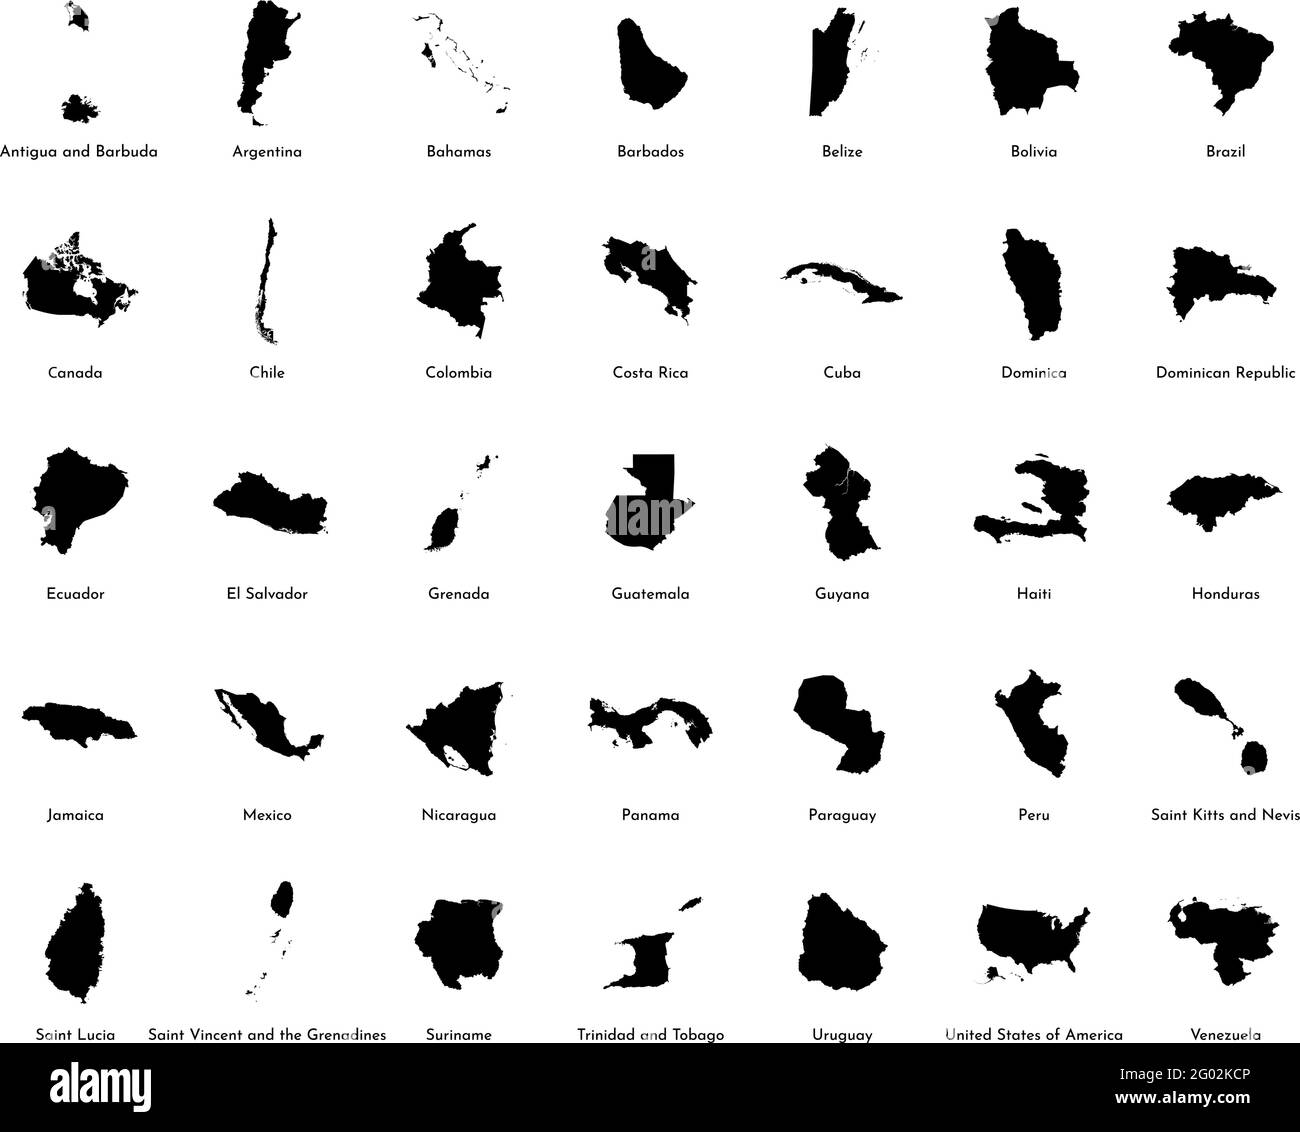 Vektorgrafik-Set mit vereinfachten Karten aller Süd-, Nord- und Mittelamerikanischen Staaten (Länder). Schwarze Silhouetten, weißer Hintergrund. Alphabet Stock Vektor